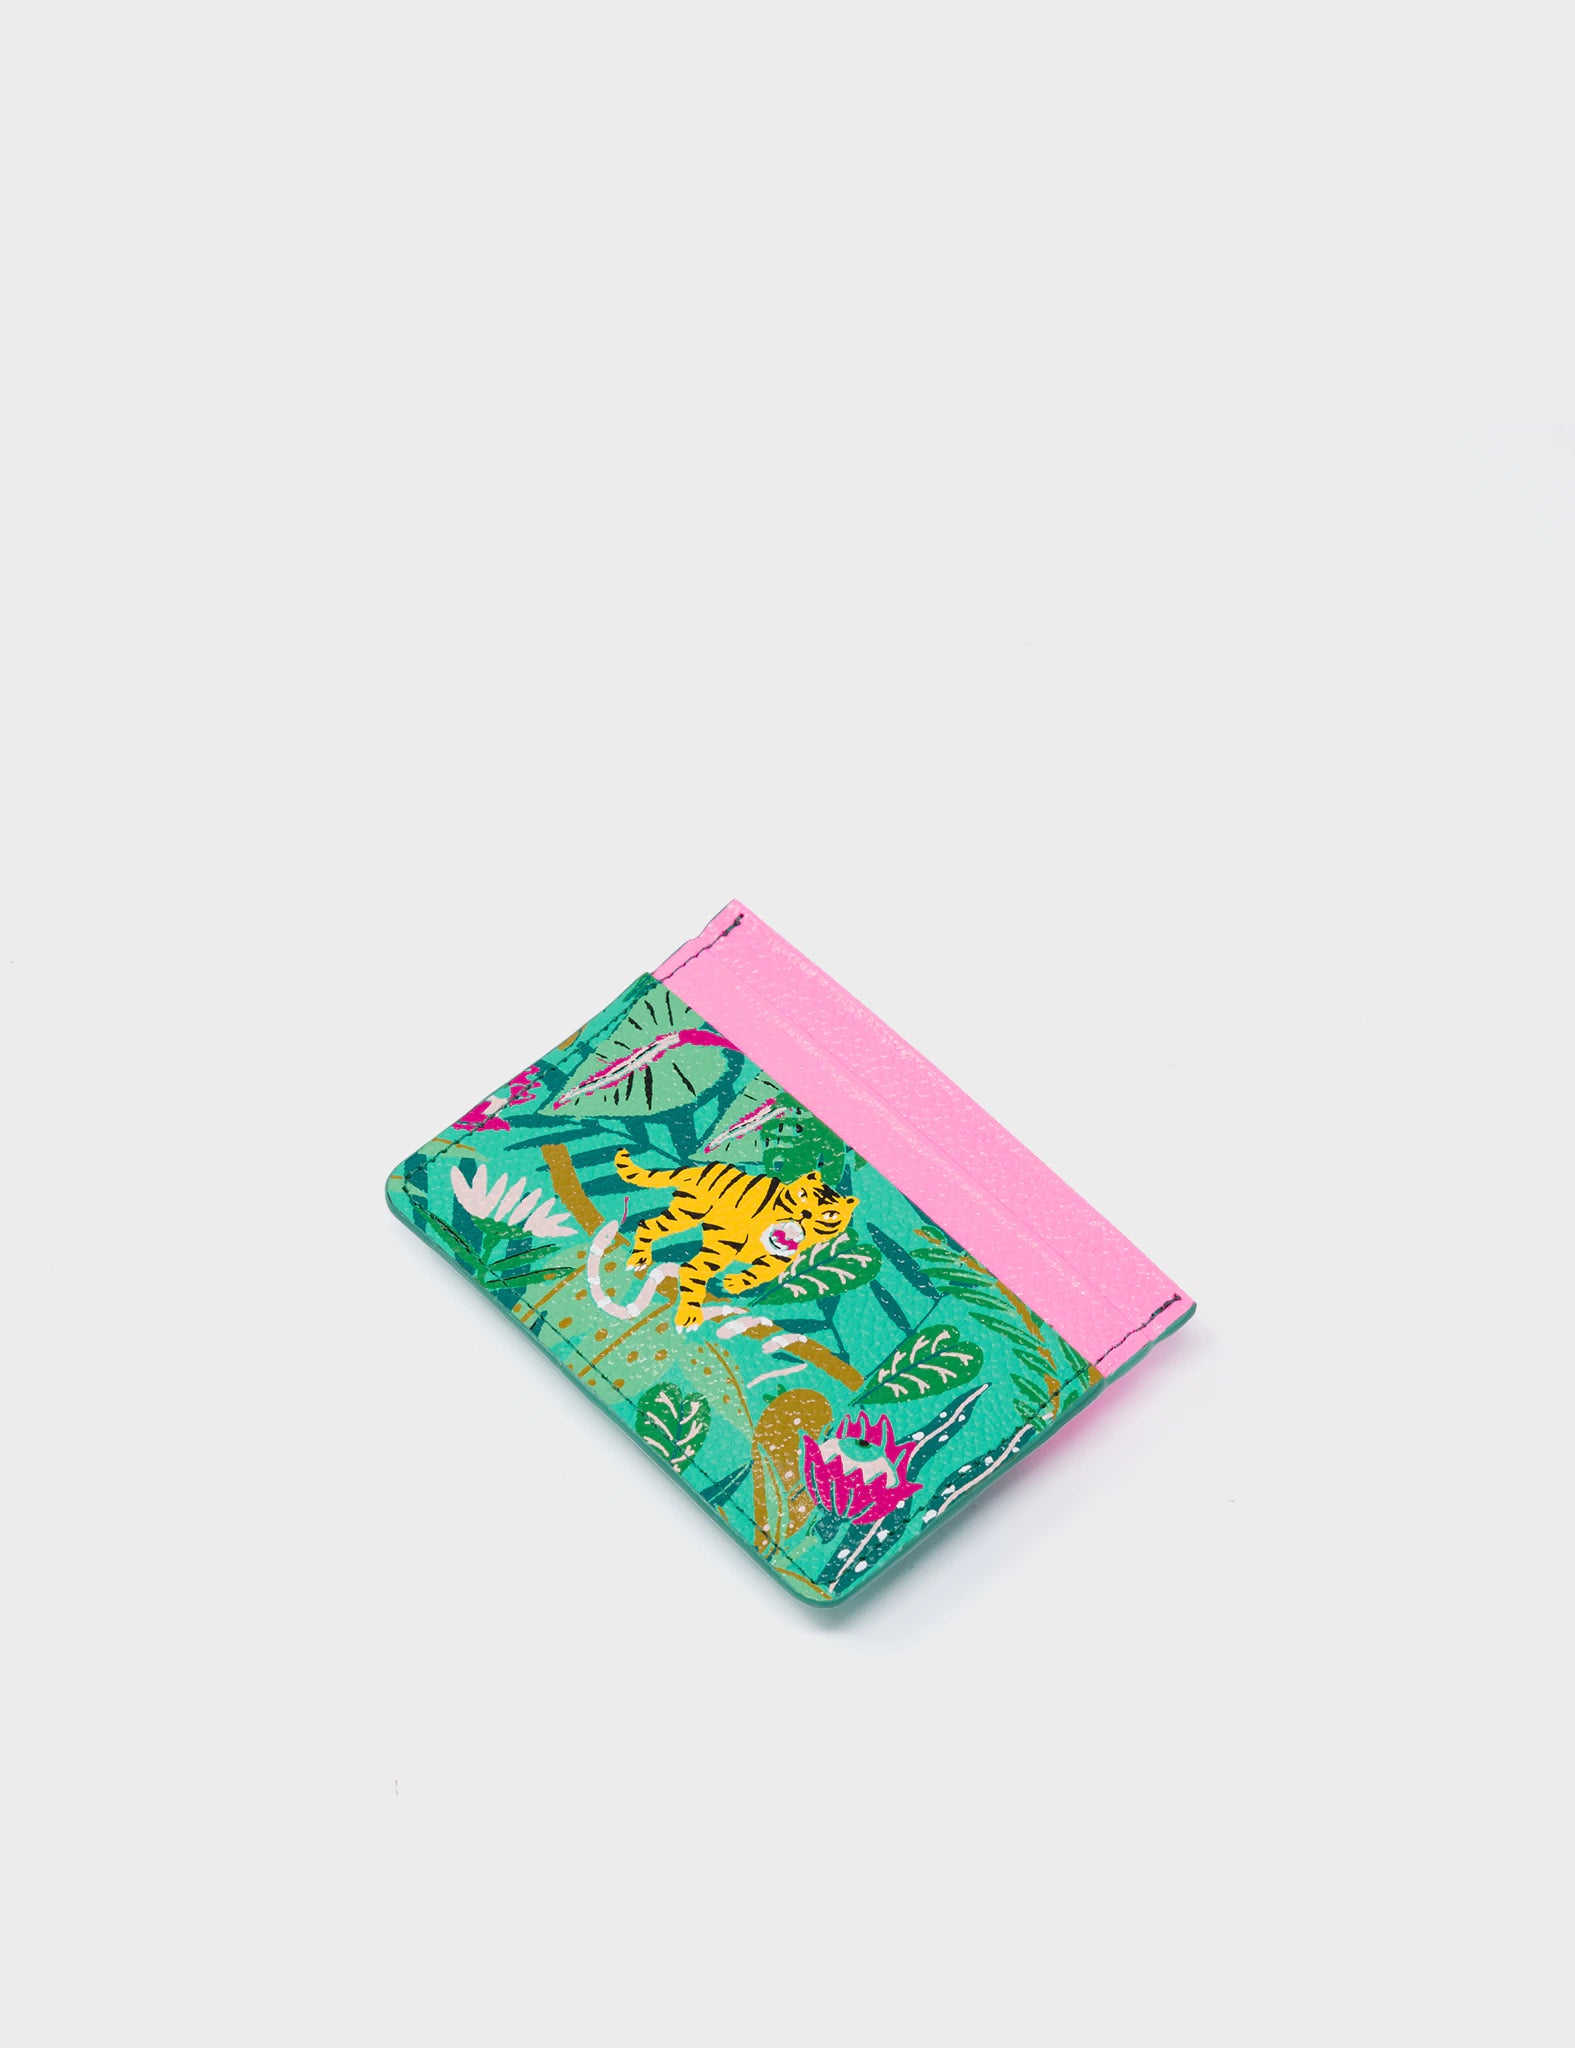 Filium Biscay Green And Rose Pink Leather Cardholder - el Trópico Print Design - Side